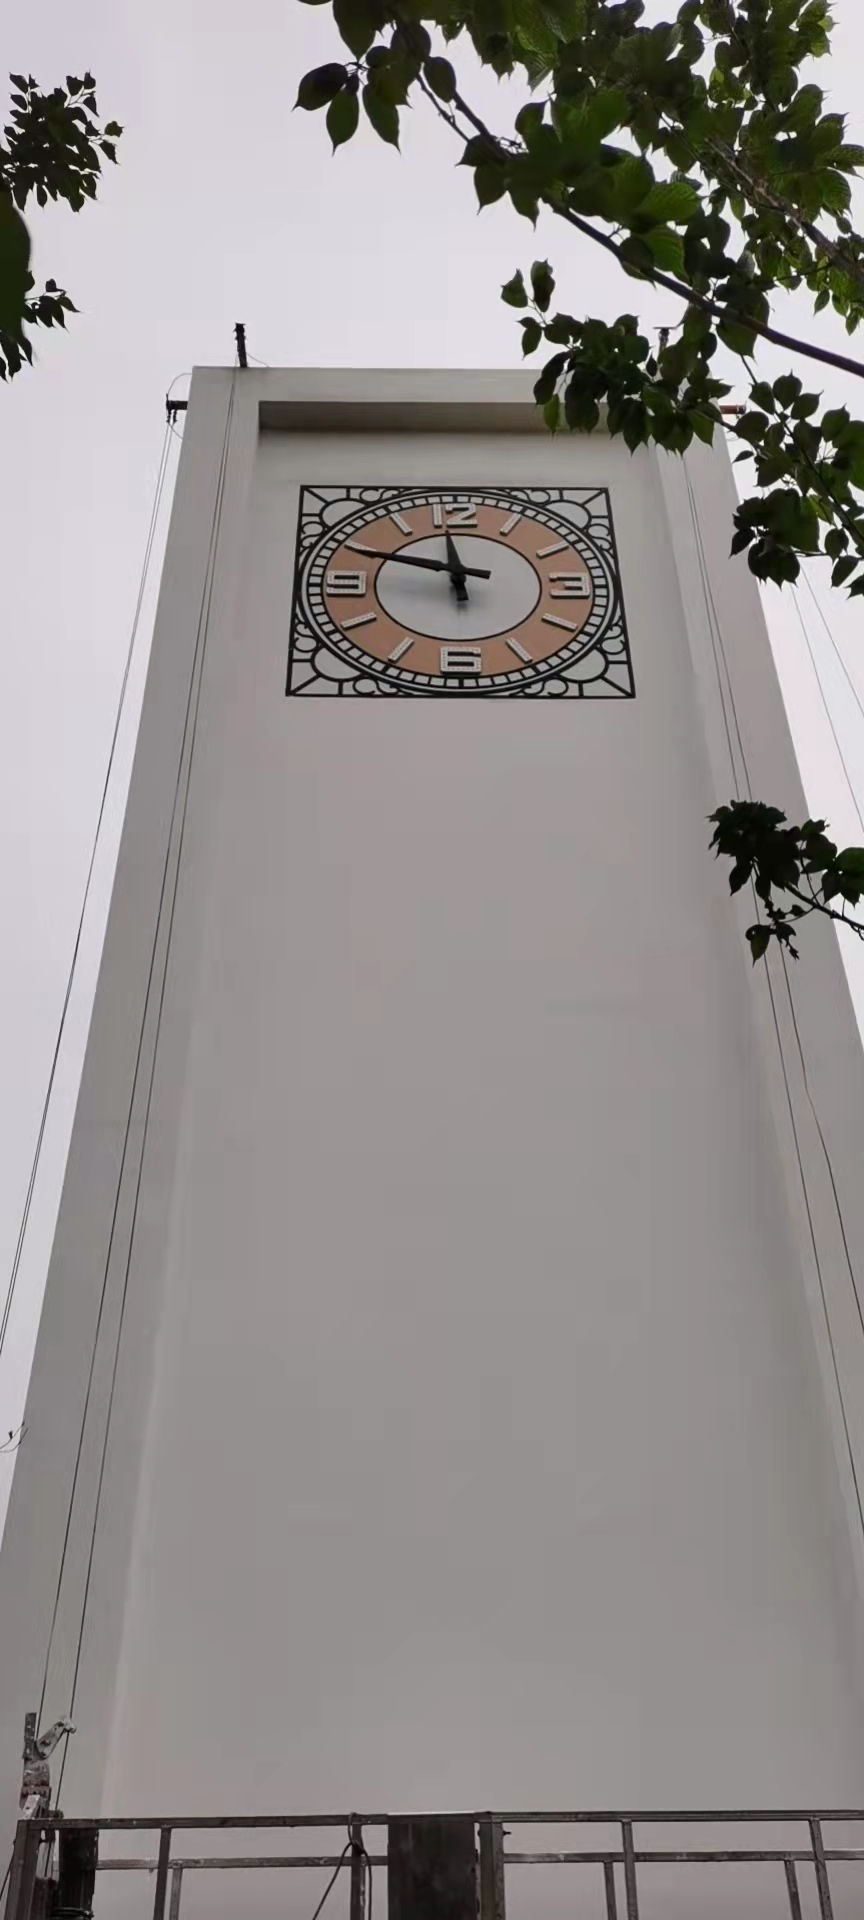 学校户外壁钟 楼上挂钟 钟楼座钟 定制 维修塔钟控制器